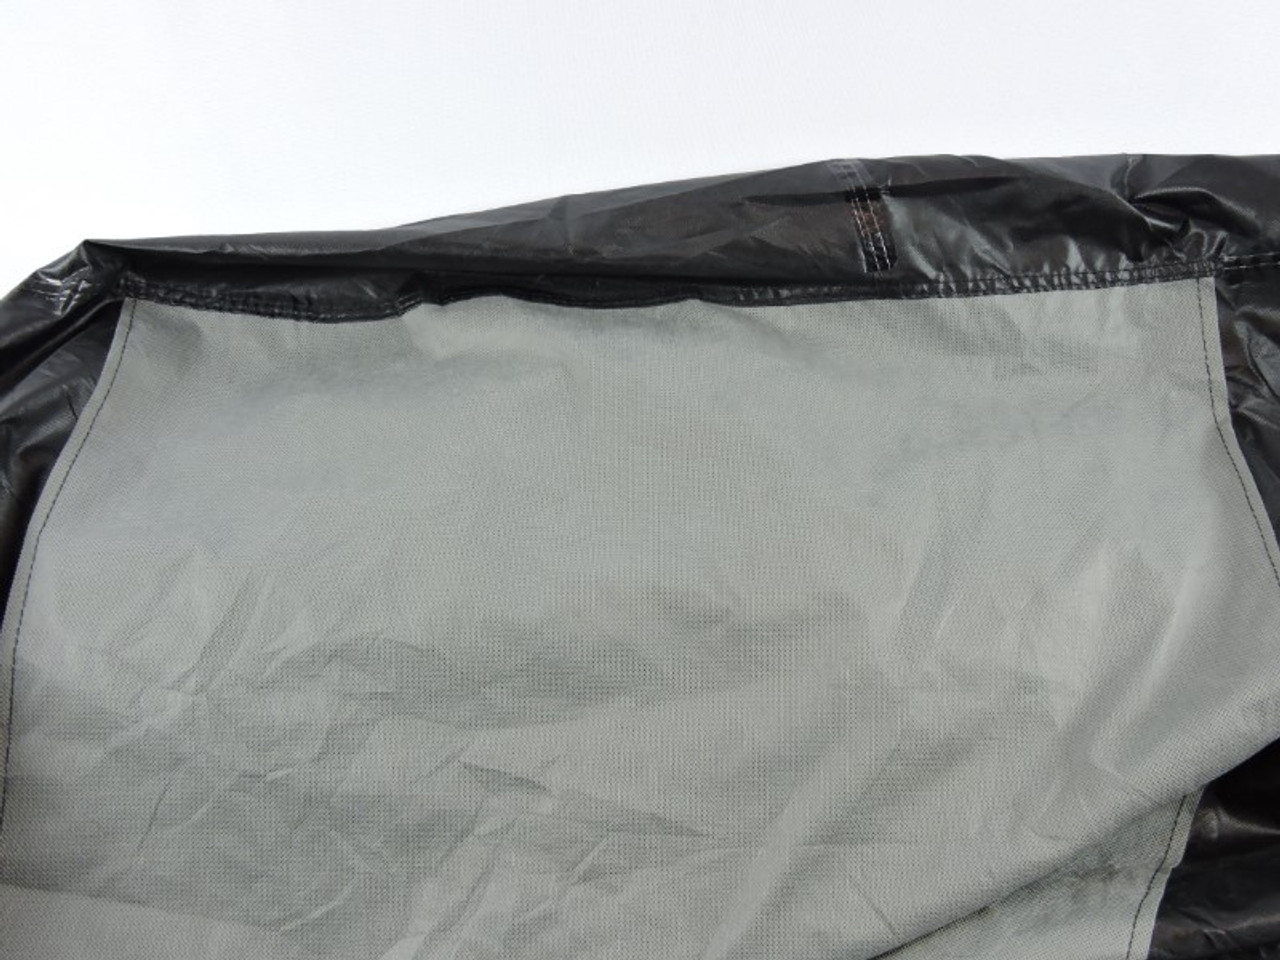 Soft non-woven windscreen inner liner.